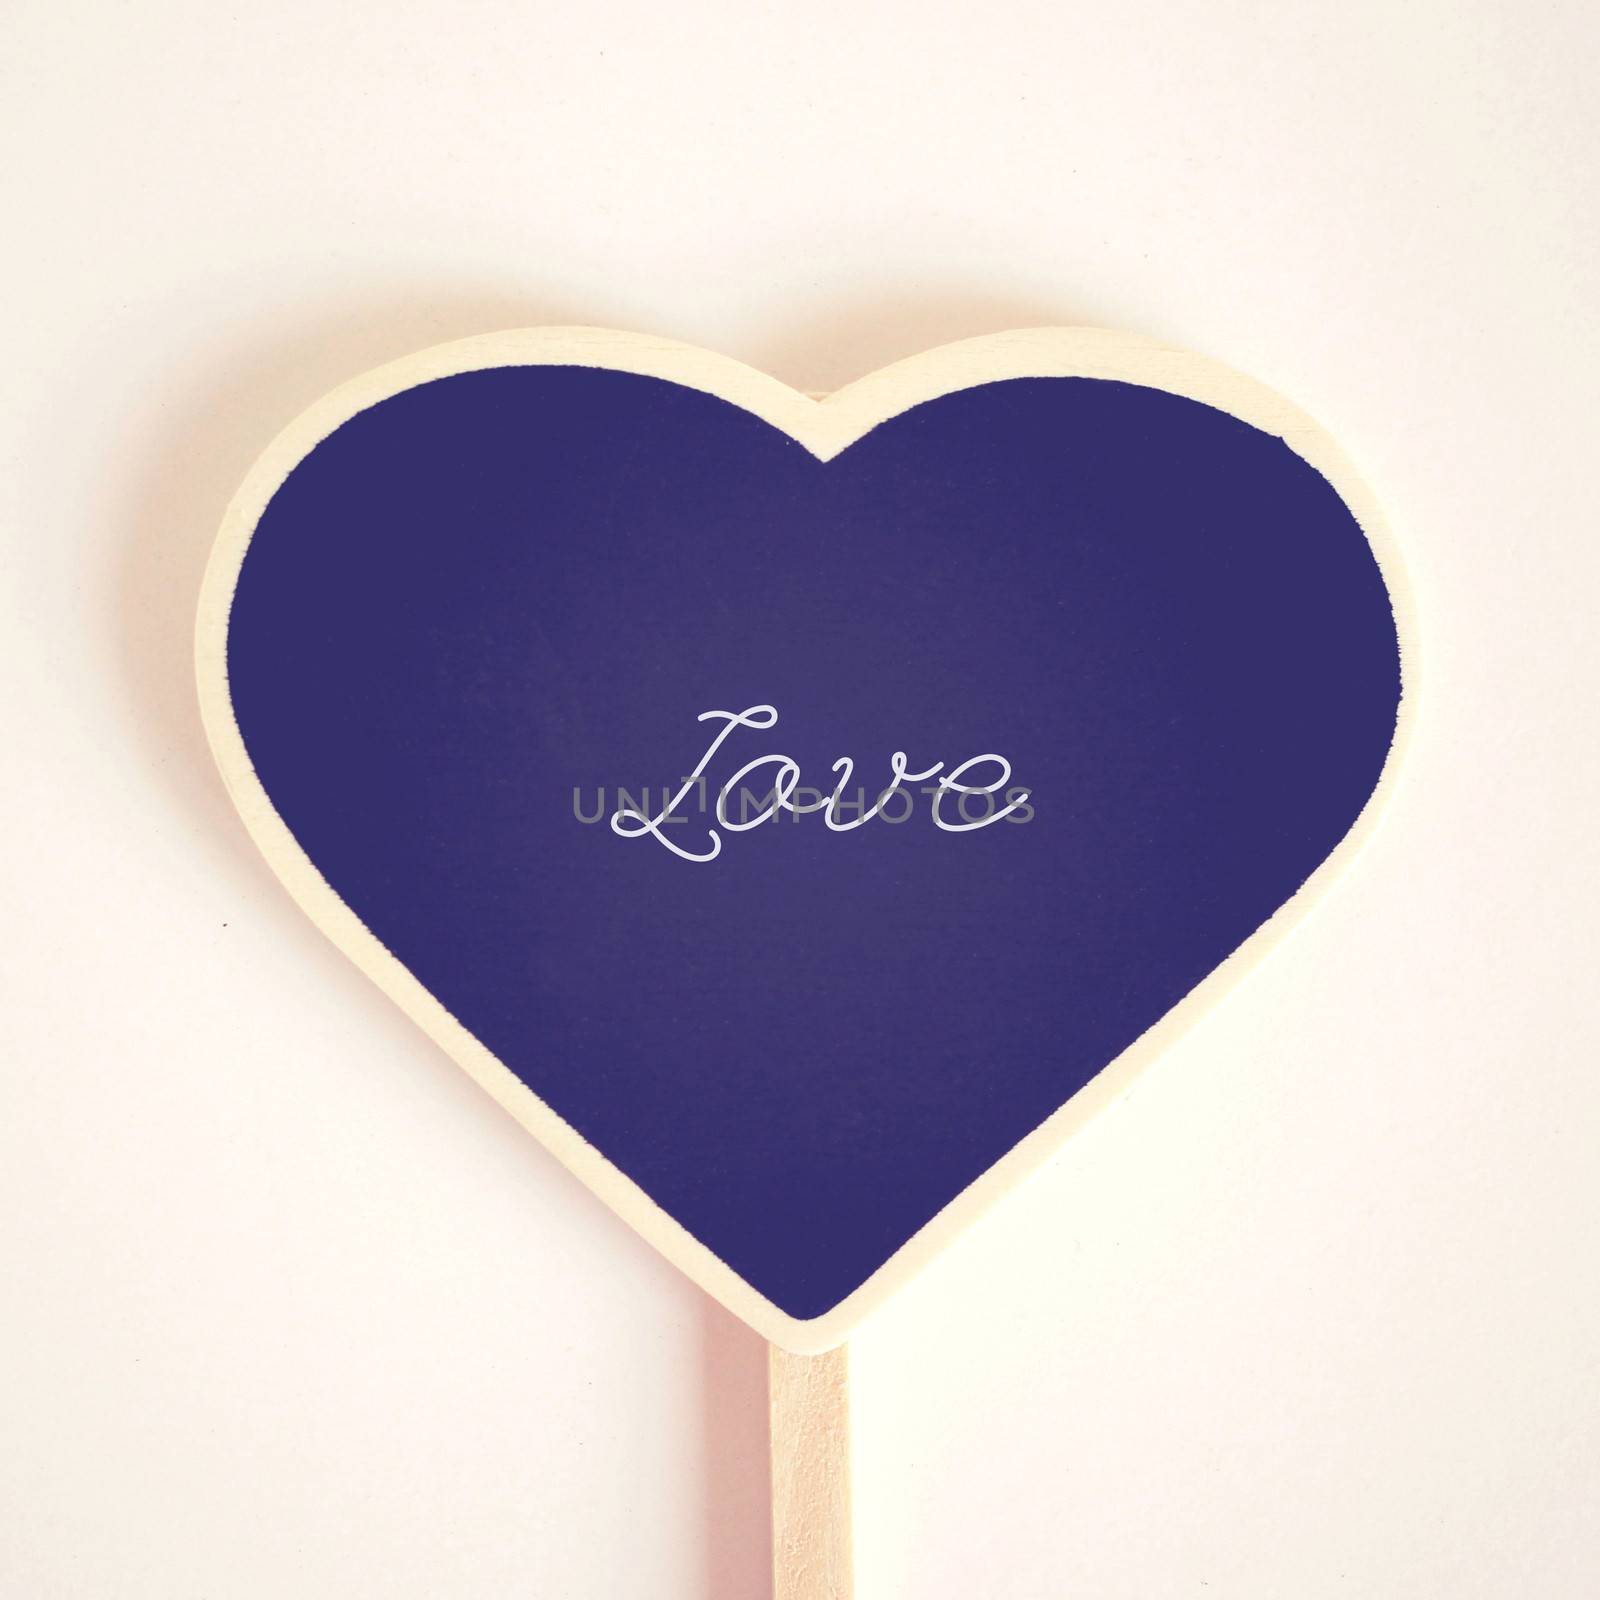 Love word on heart shaped blackboard, retro filter effect 